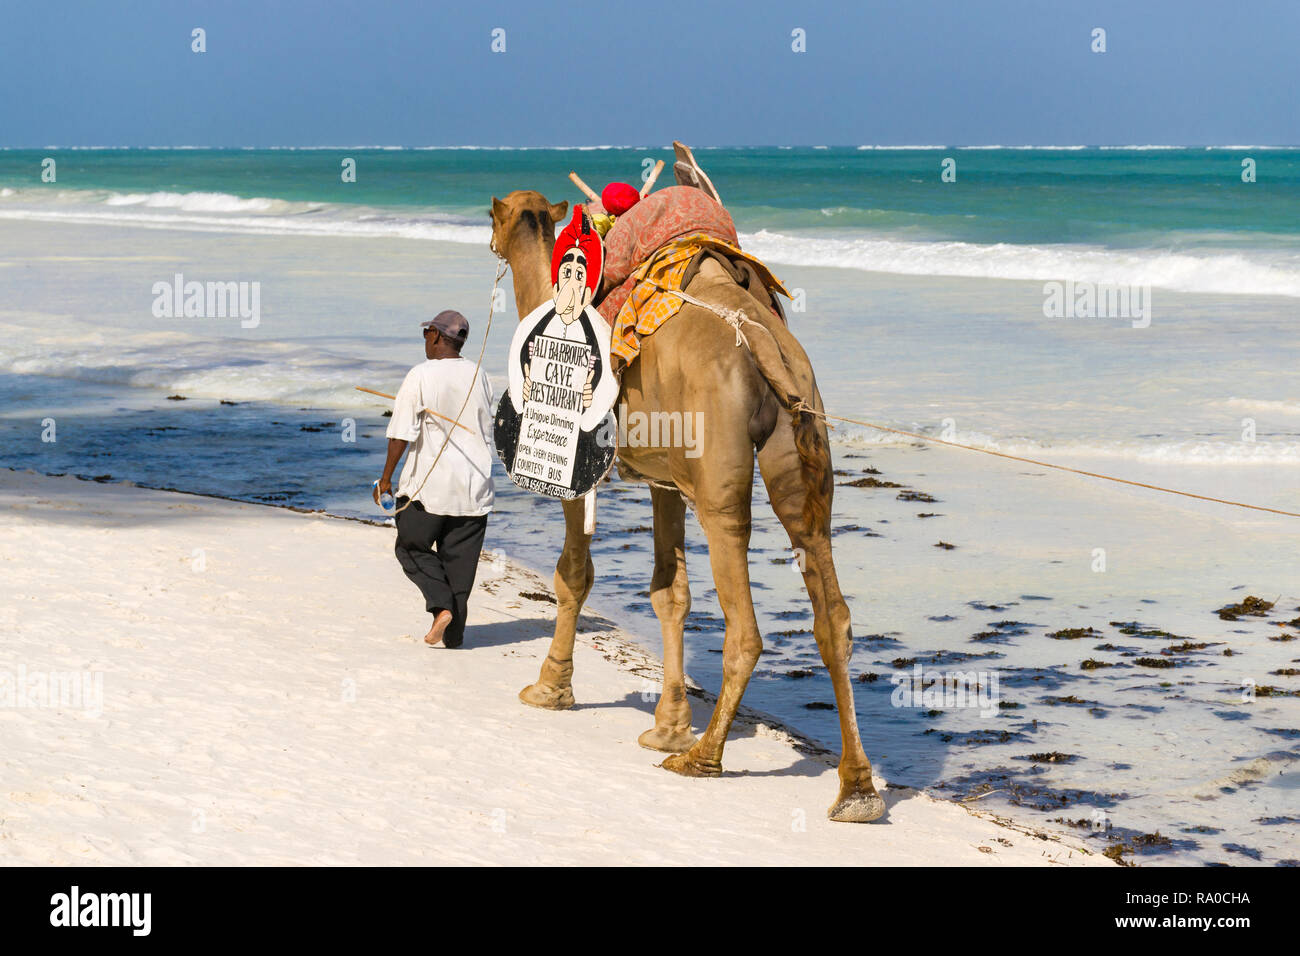 Un hombre camina kenianos locales su camello publicidad Ali Barbours cueva restaurante junto a la playa de arena blanca tropical de Diani, Kenya Foto de stock